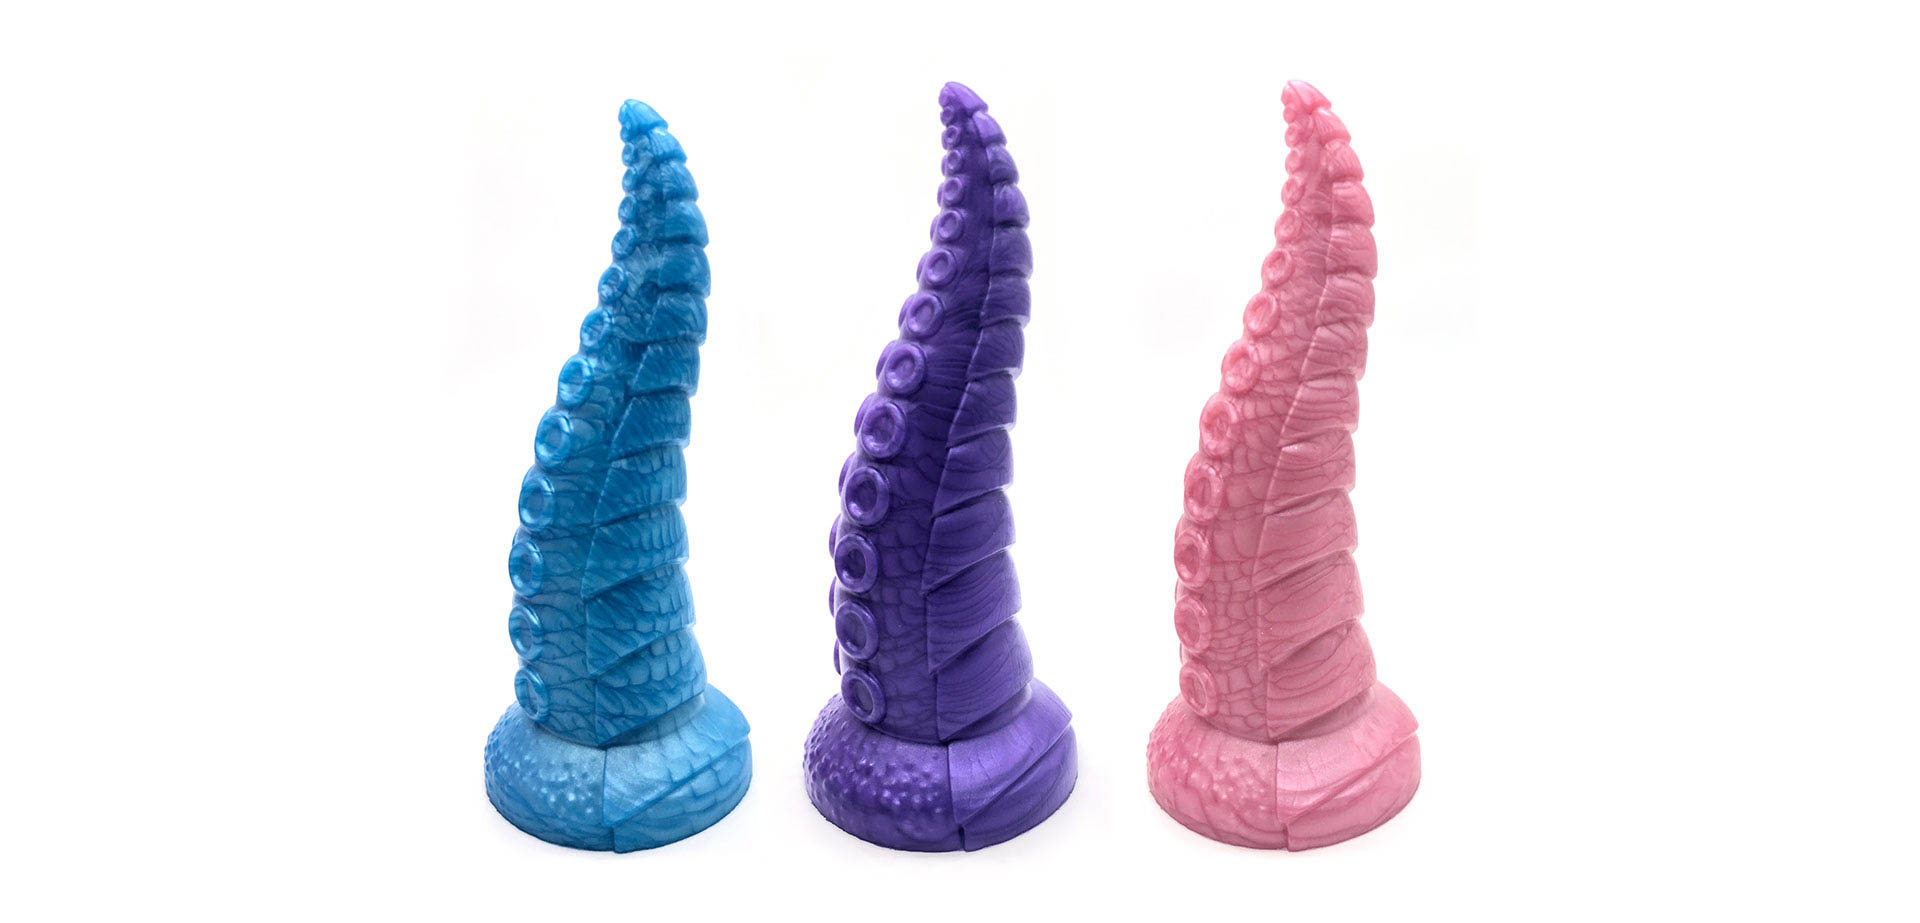 The tentacle - three sizes dildos.